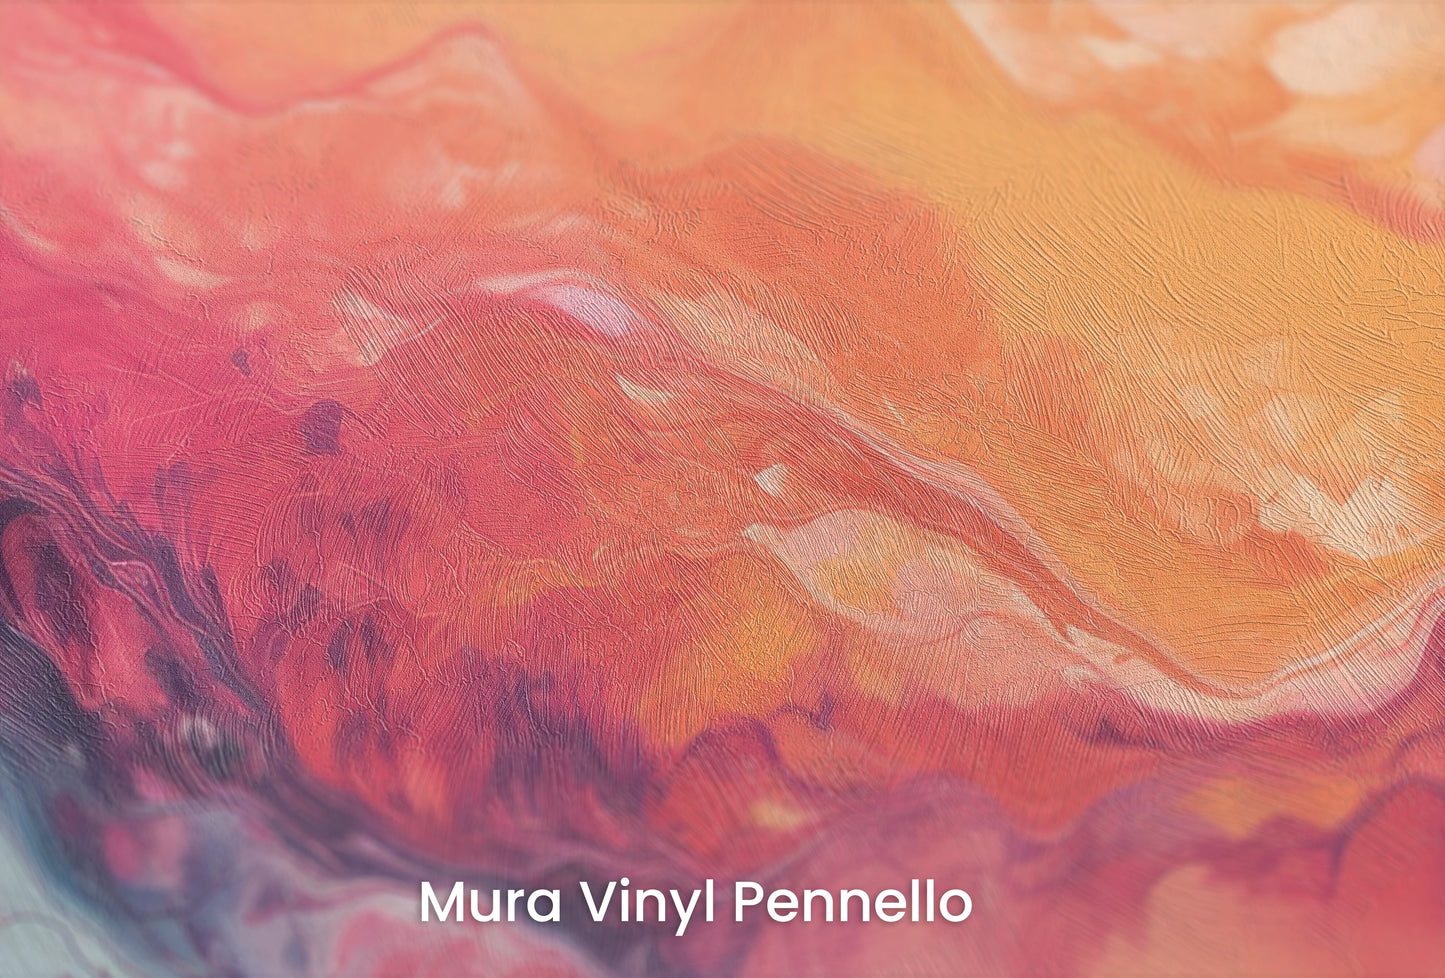 Zbliżenie na artystyczną fototapetę o nazwie Neptune's Flow na podłożu Mura Vinyl Pennello - faktura pociągnięć pędzla malarskiego.